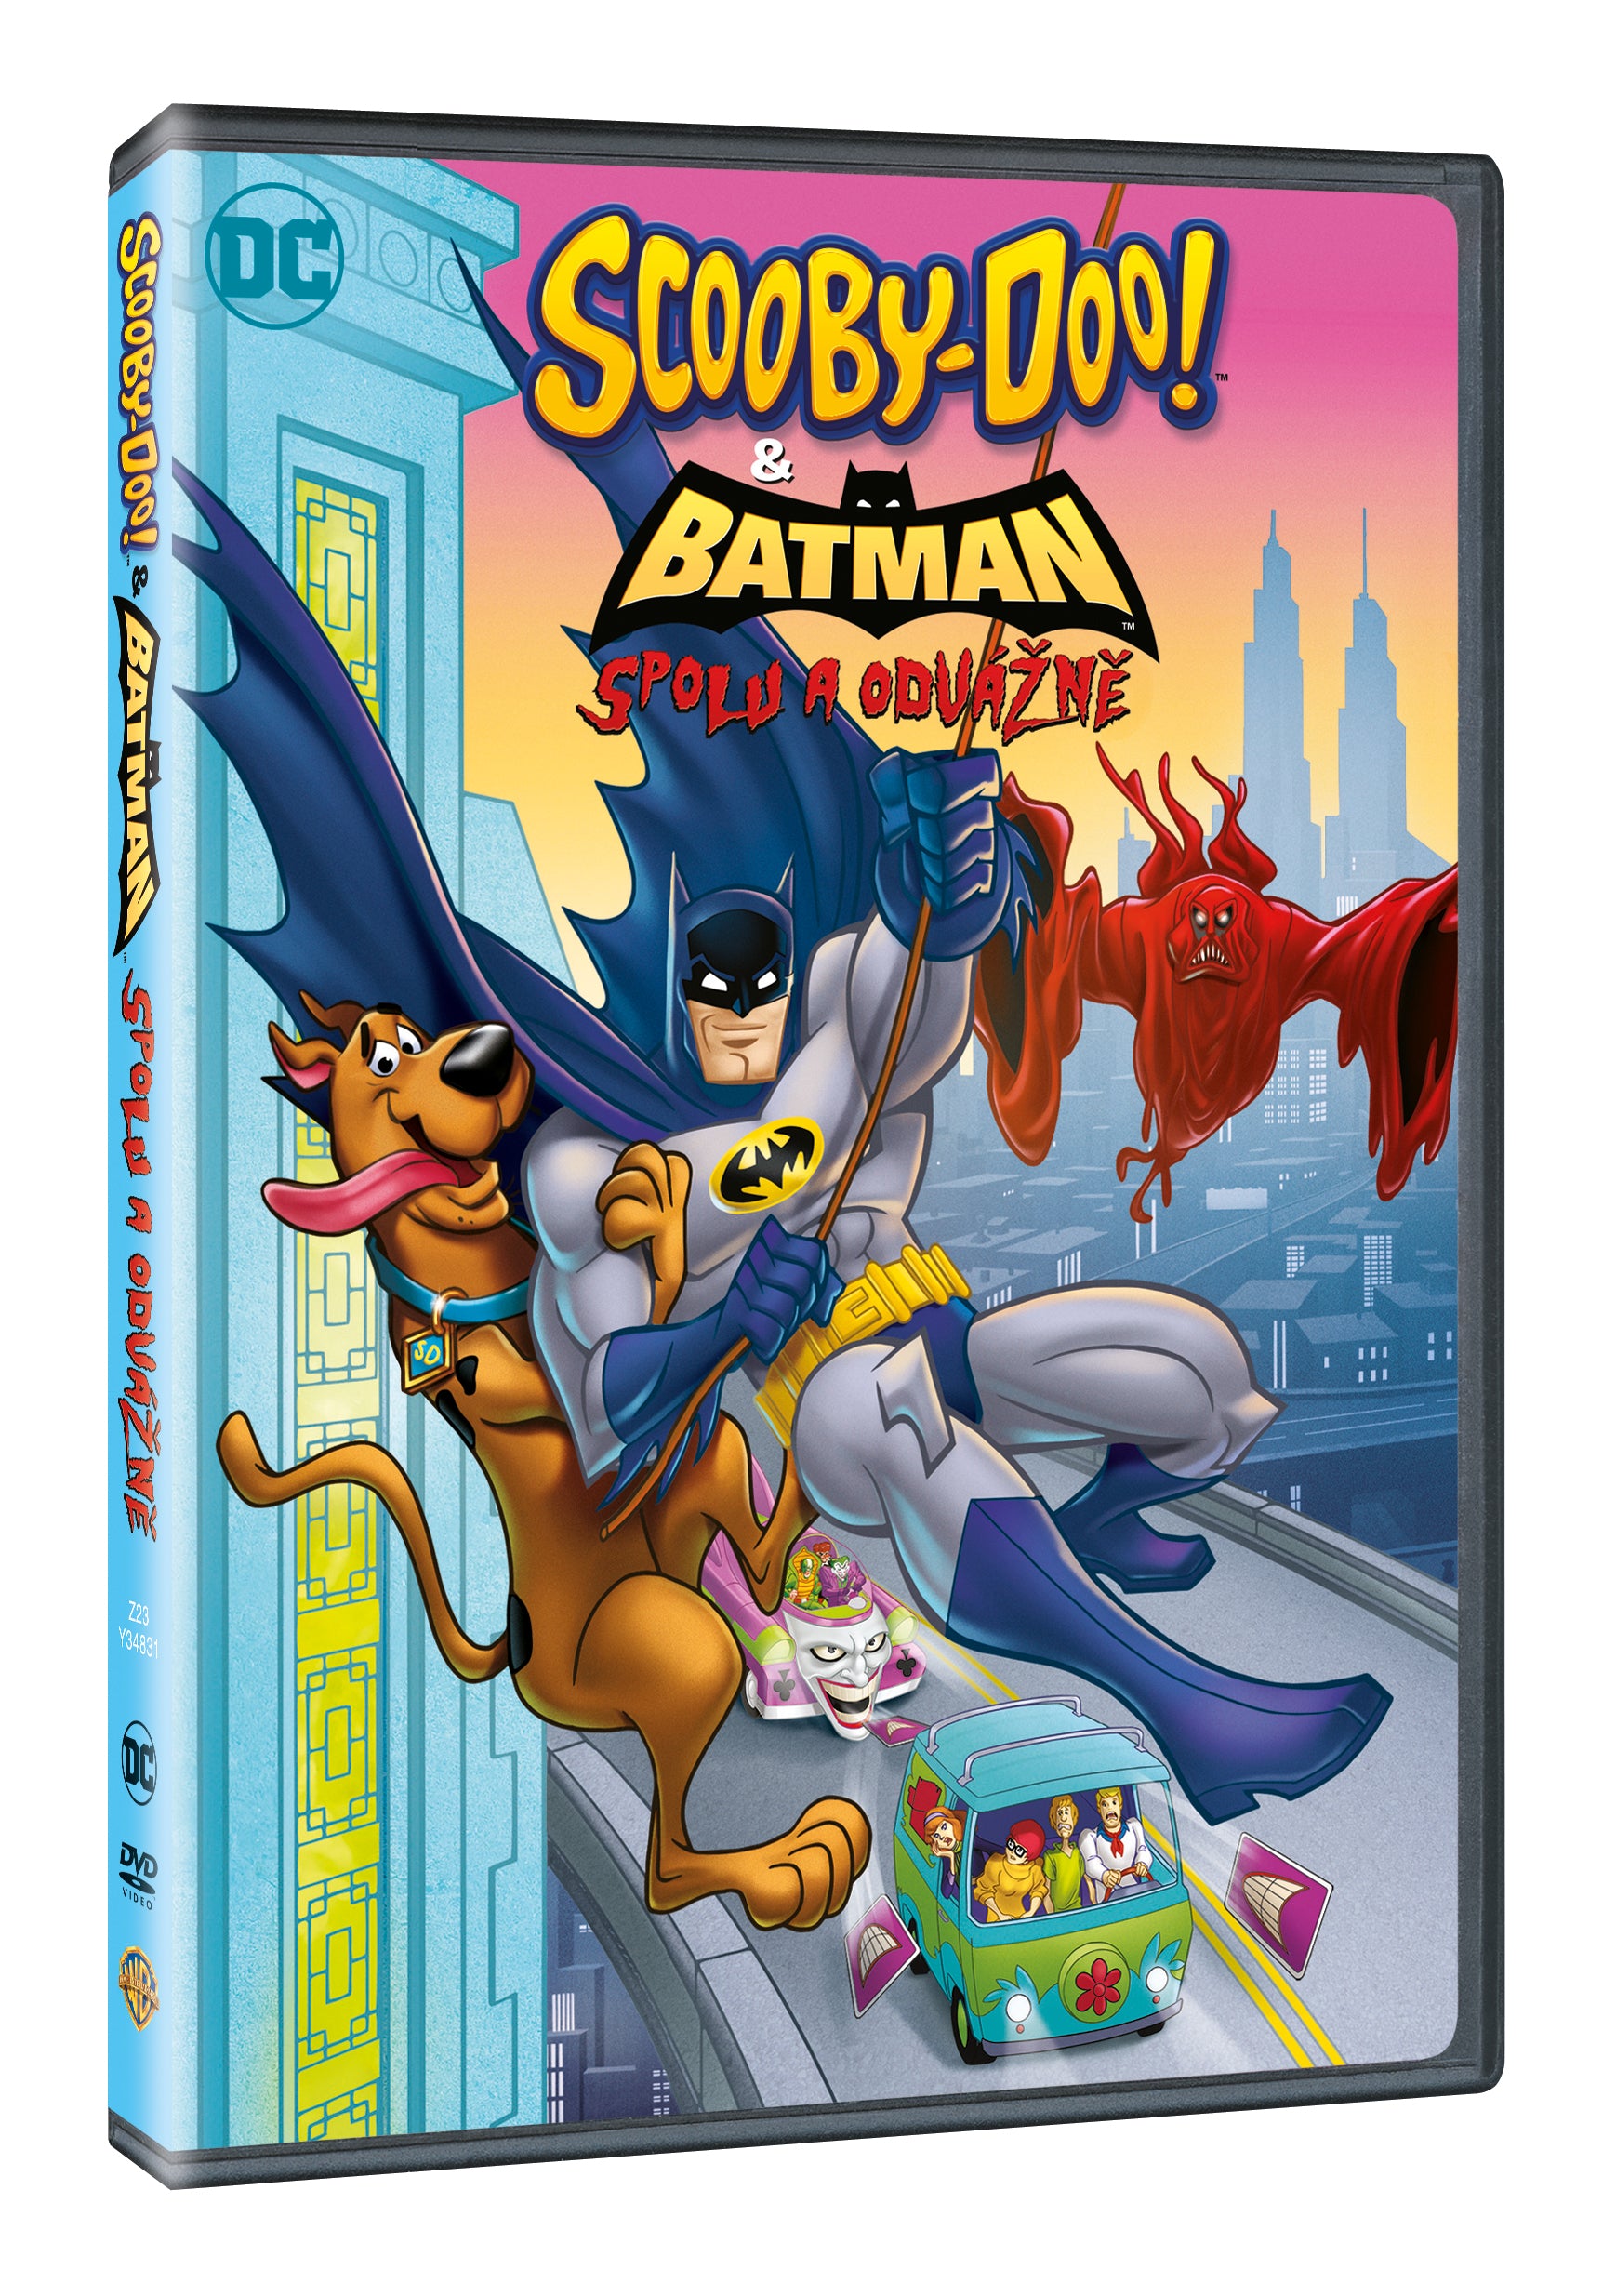 Scooby-Doo und Batman: Eine weitere DVD / Scooby-Doo und Batman: Brave and Bold